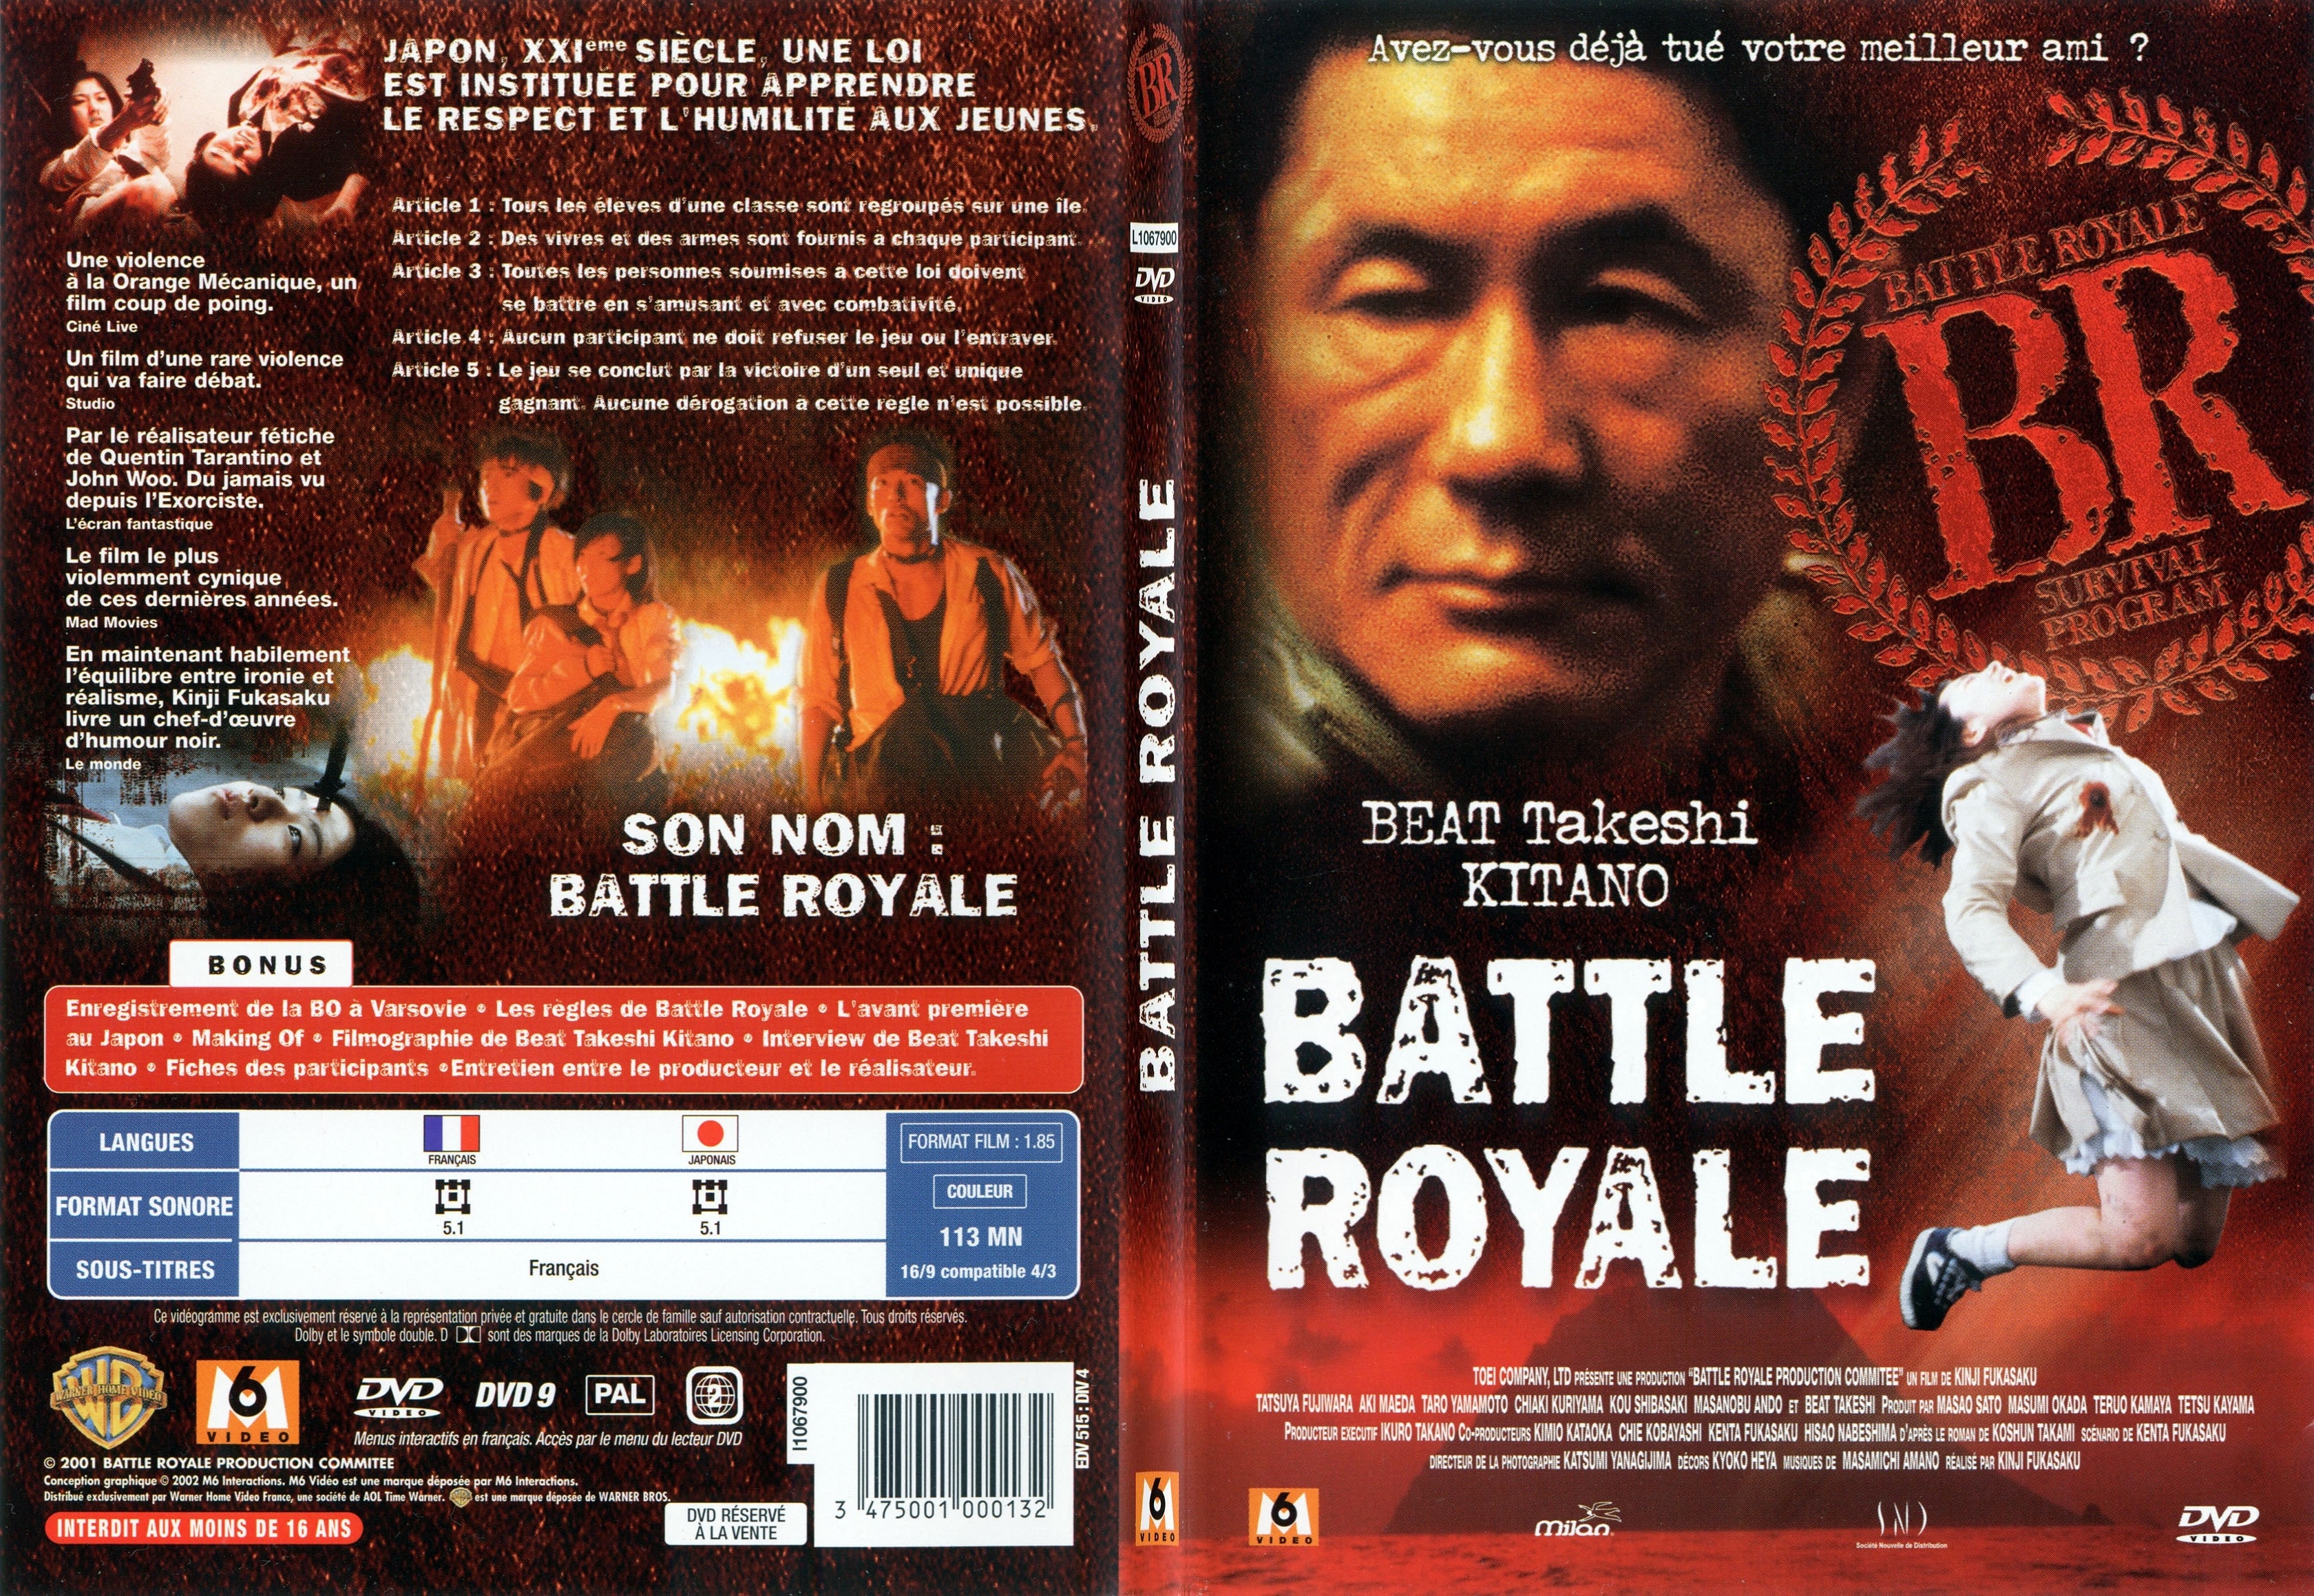 Jaquette DVD Battle royale - SLIM